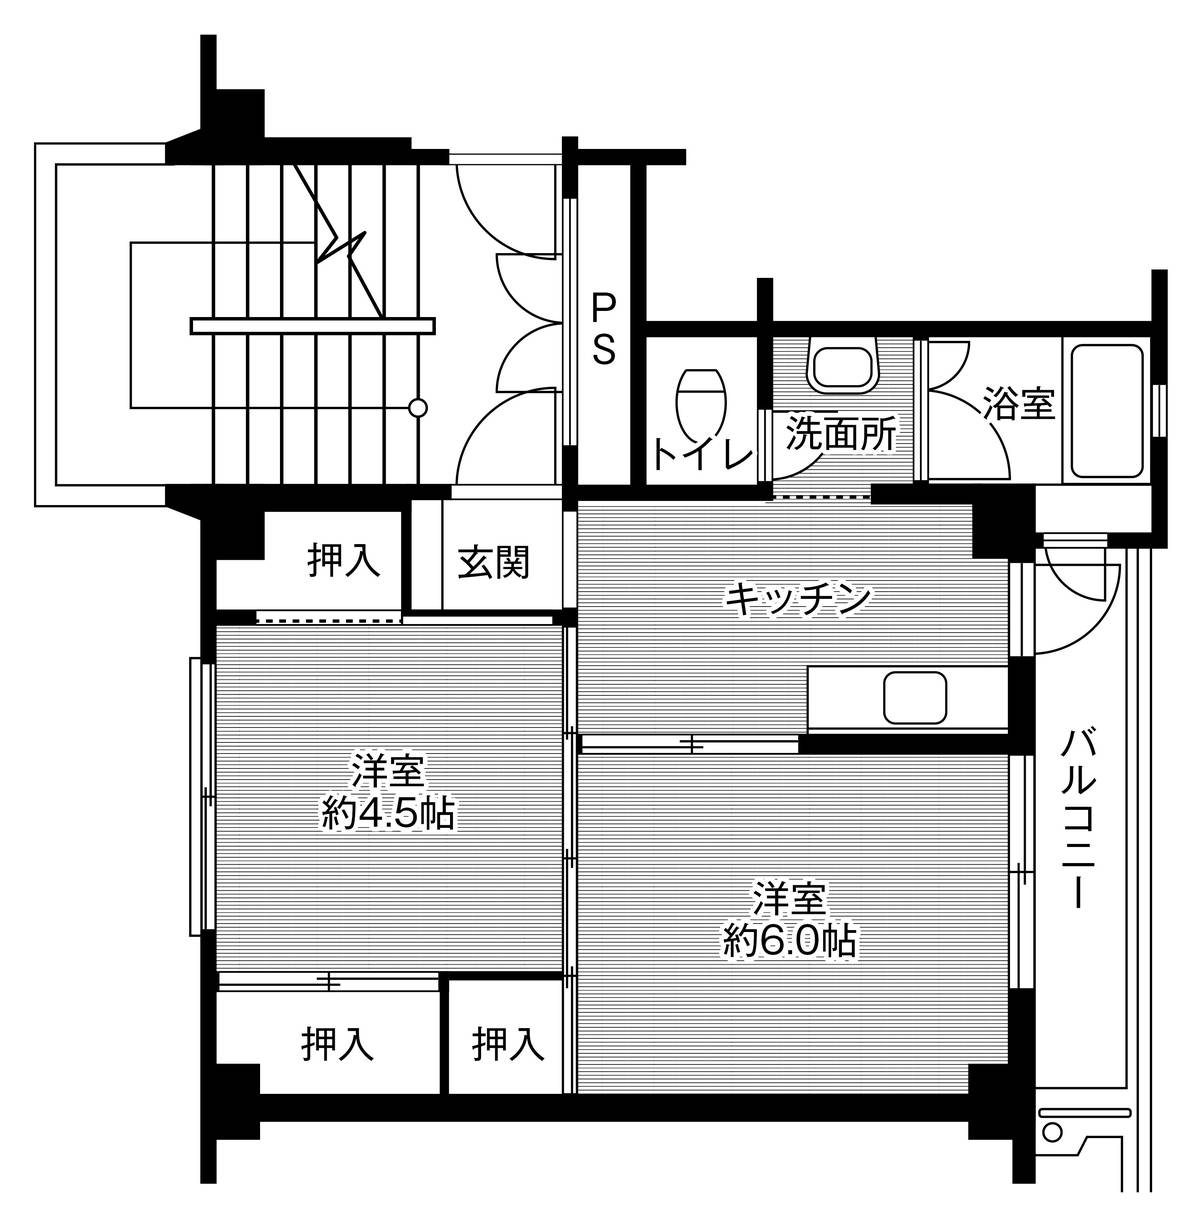 Sơ đồ phòng 2K của Village House Shimouchi ở Seki-shi